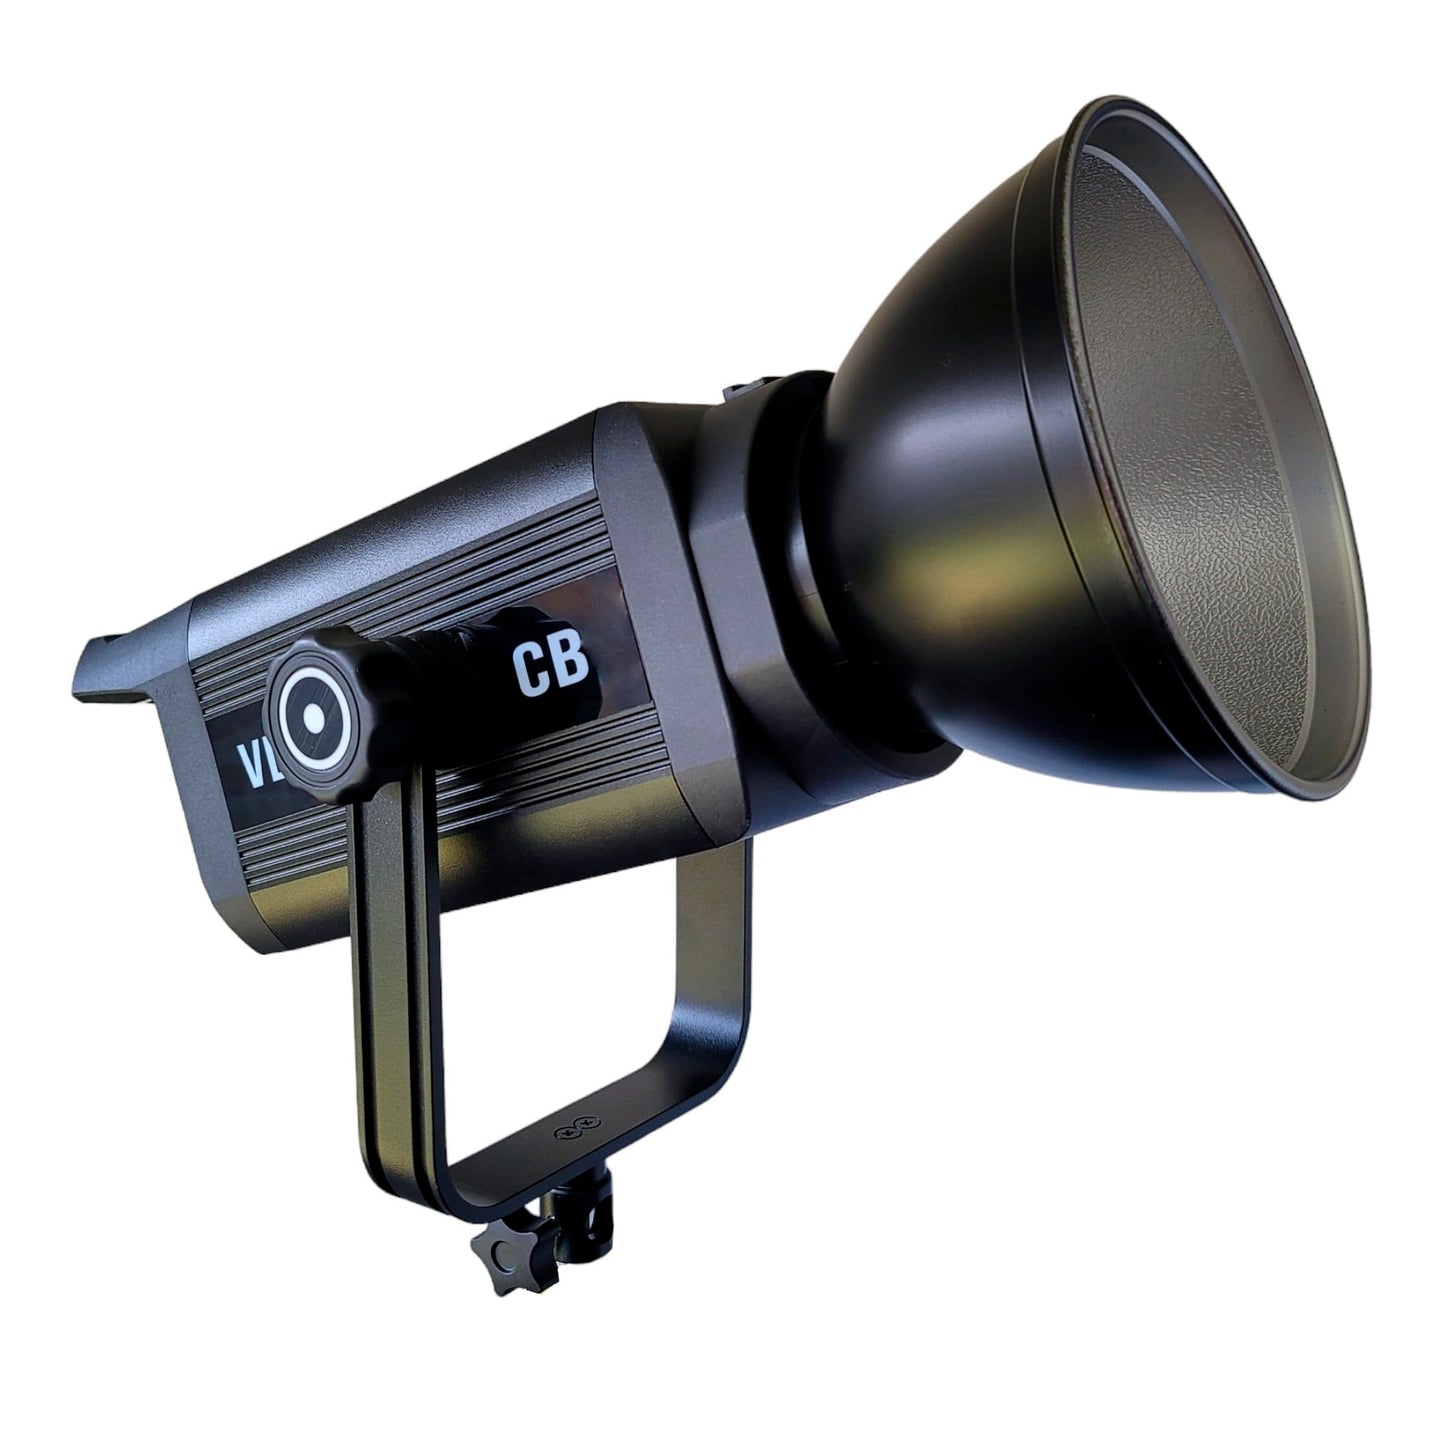 HRIDZ VL300 300W LED Video Light Bi-Colour Continuous Dimmable Photo Studio